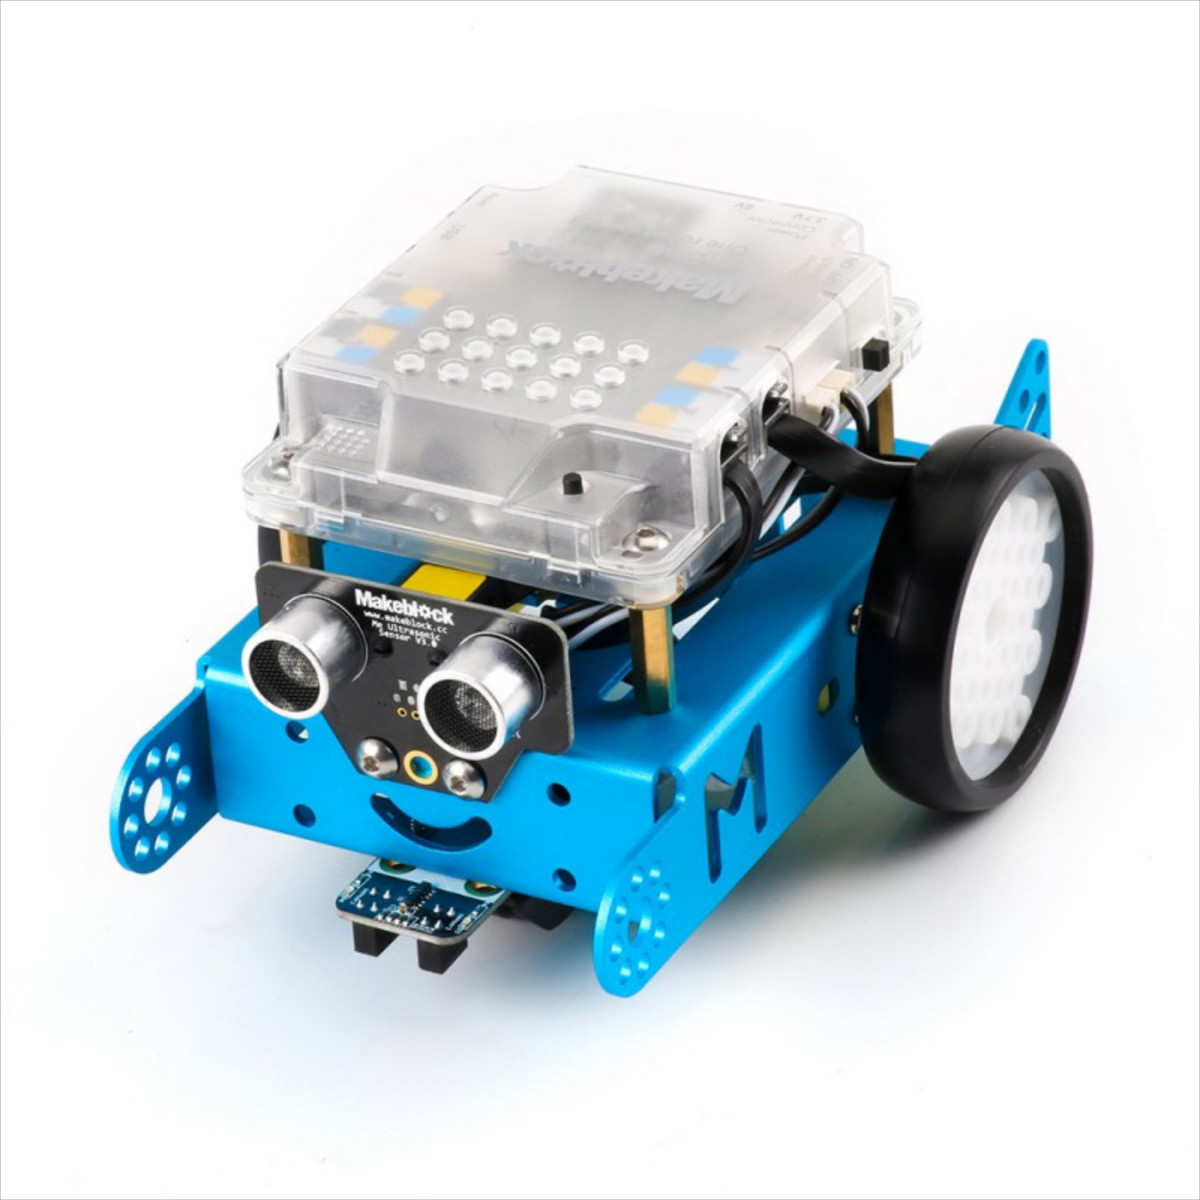 Makeblock mBot v1.1 Blue STEM Educational Programmable Robot (Bluetooth)